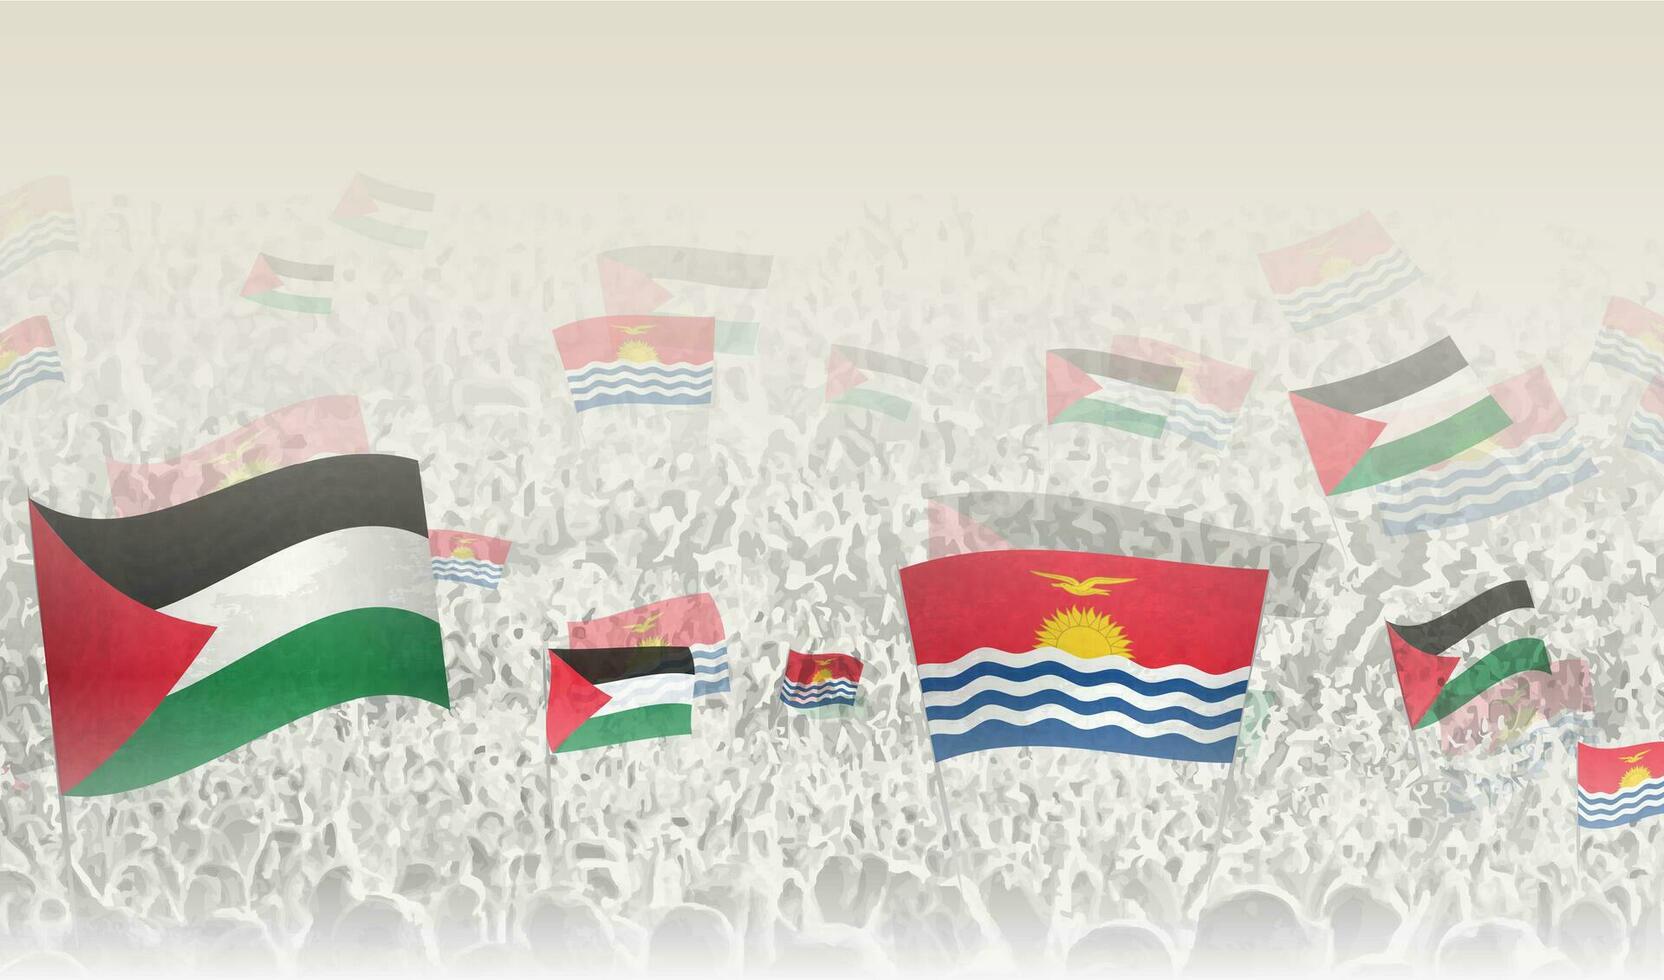 Palästina und kiribati Flaggen im ein Menge von Jubel Personen. vektor